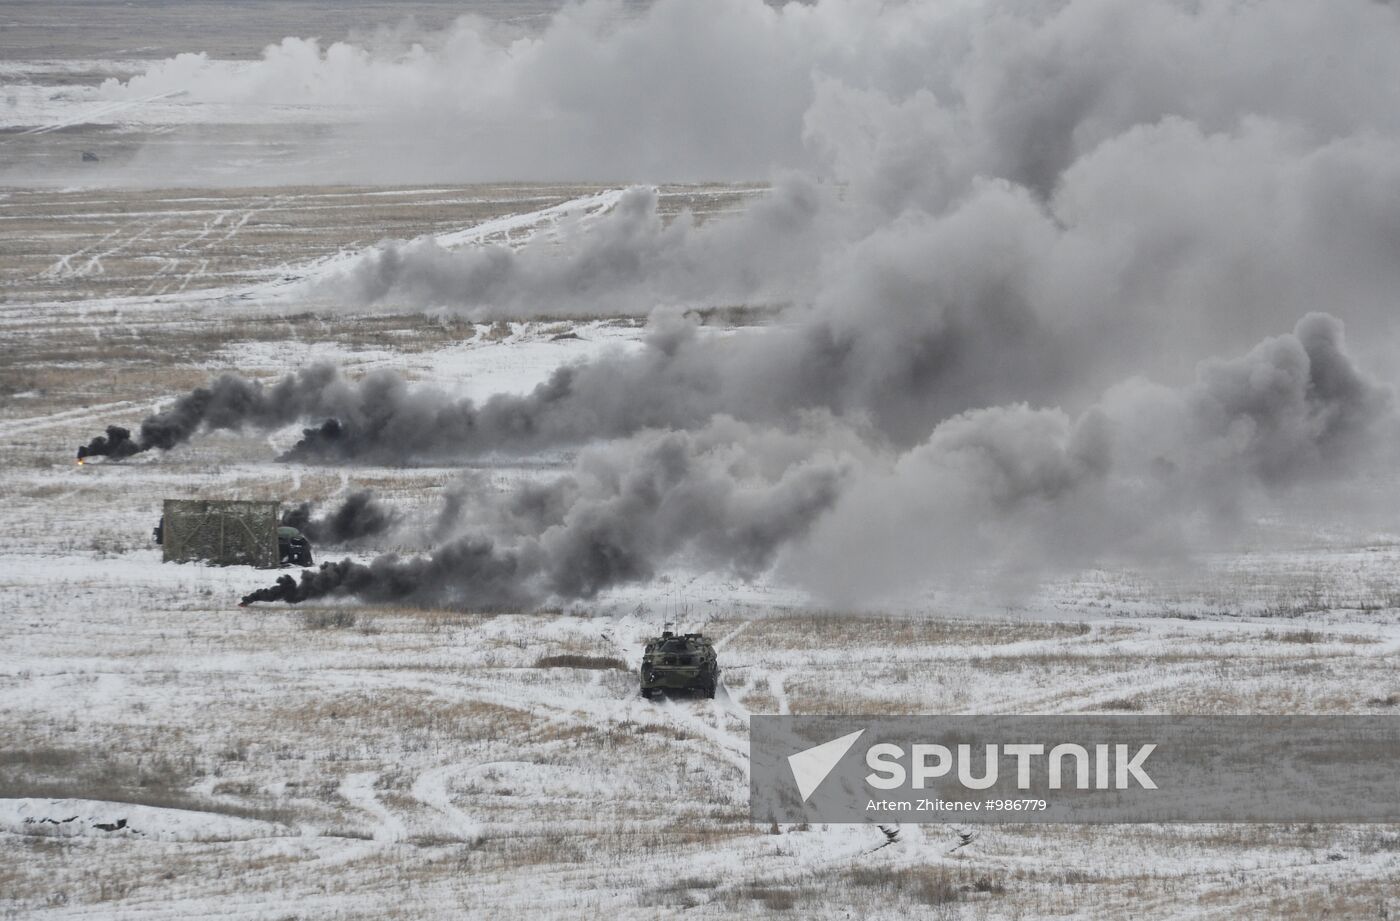 Military units of Shihanskoe garrison conduct exercises